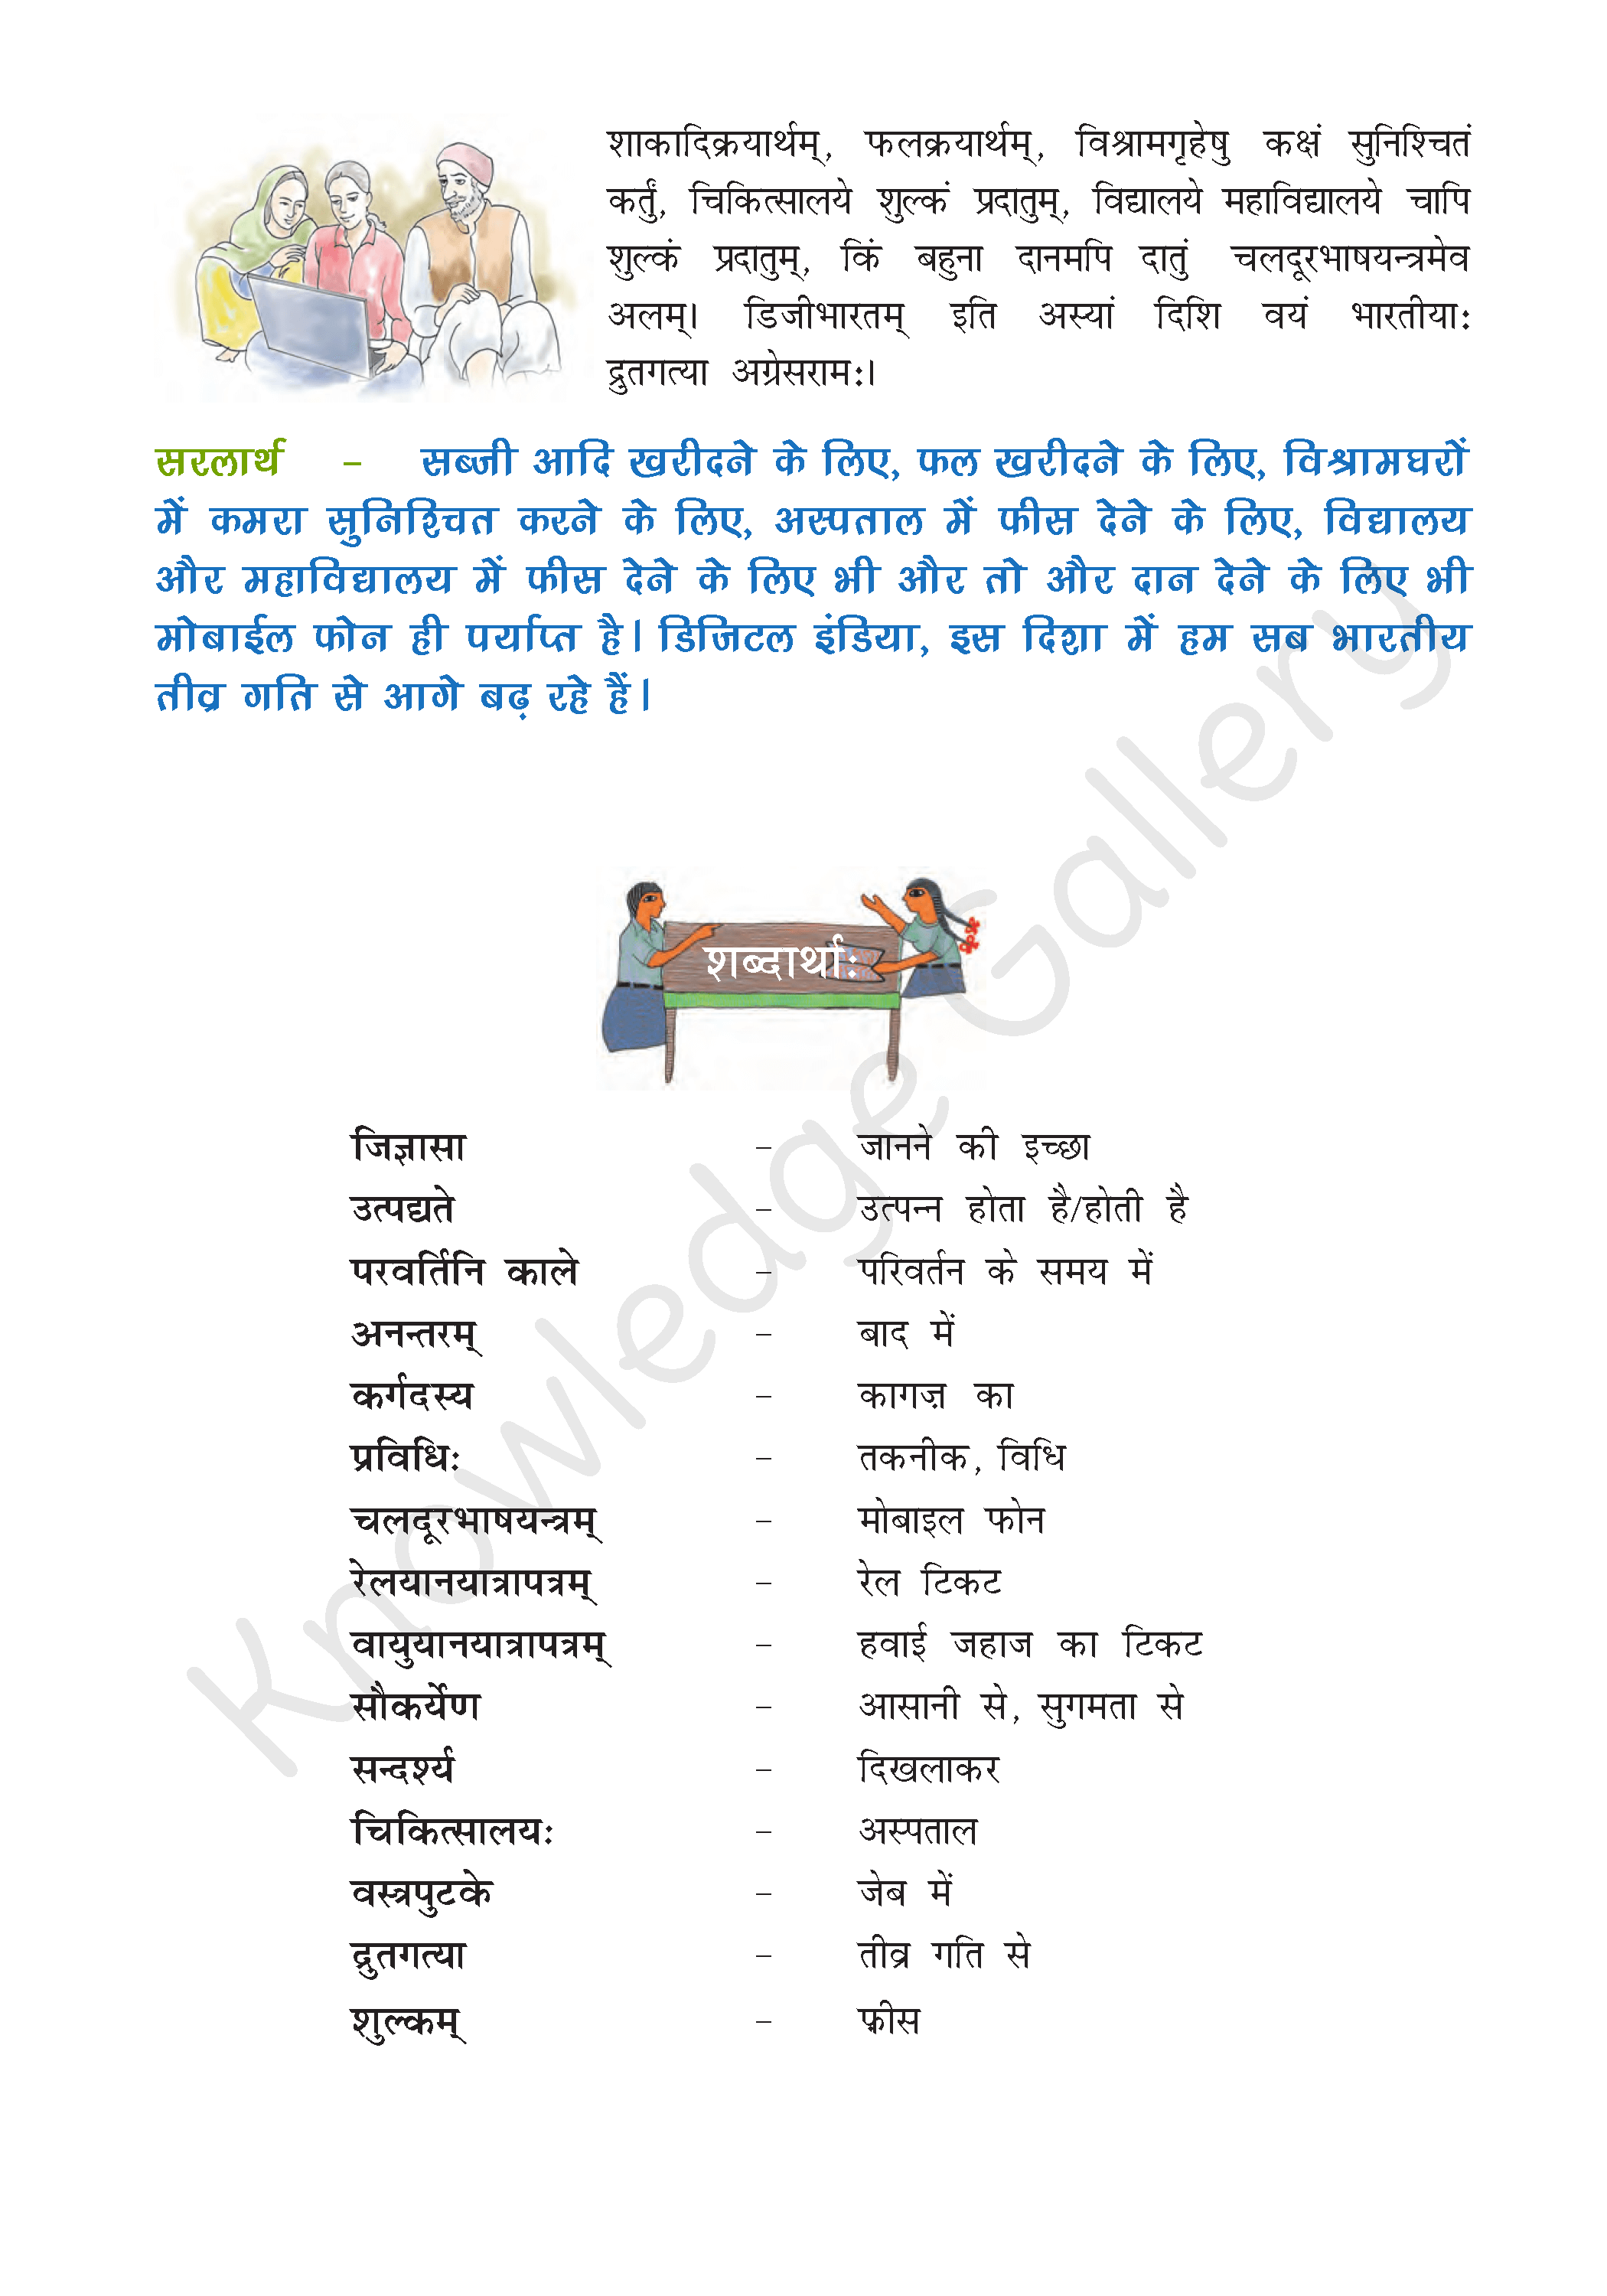 NCERT Solution For Class 8 Sanskrit Chapter 3 part 3